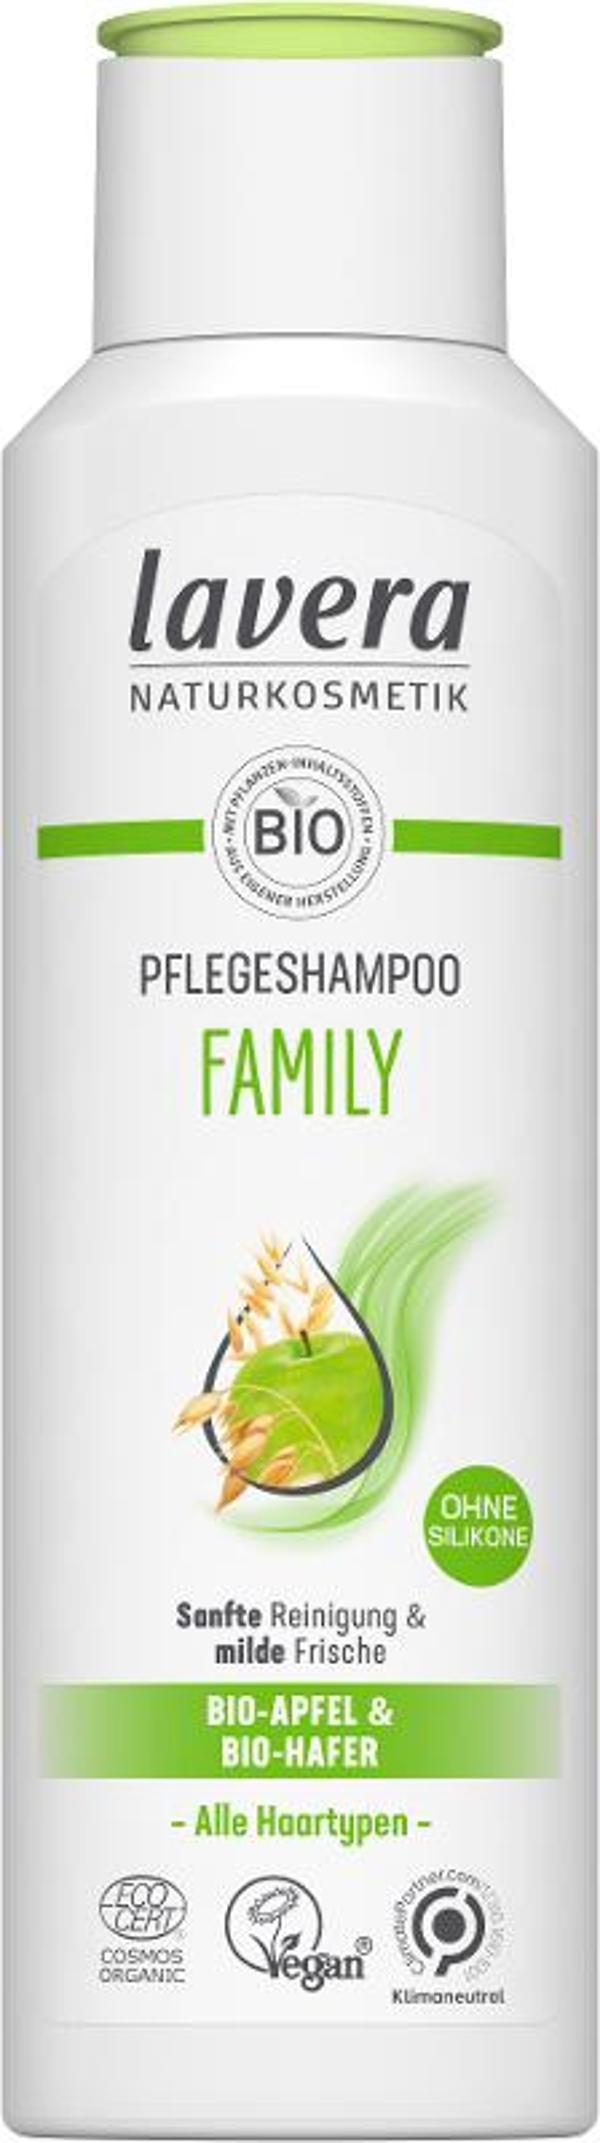 Produktfoto zu Lavera Shampoo Family - 250ml